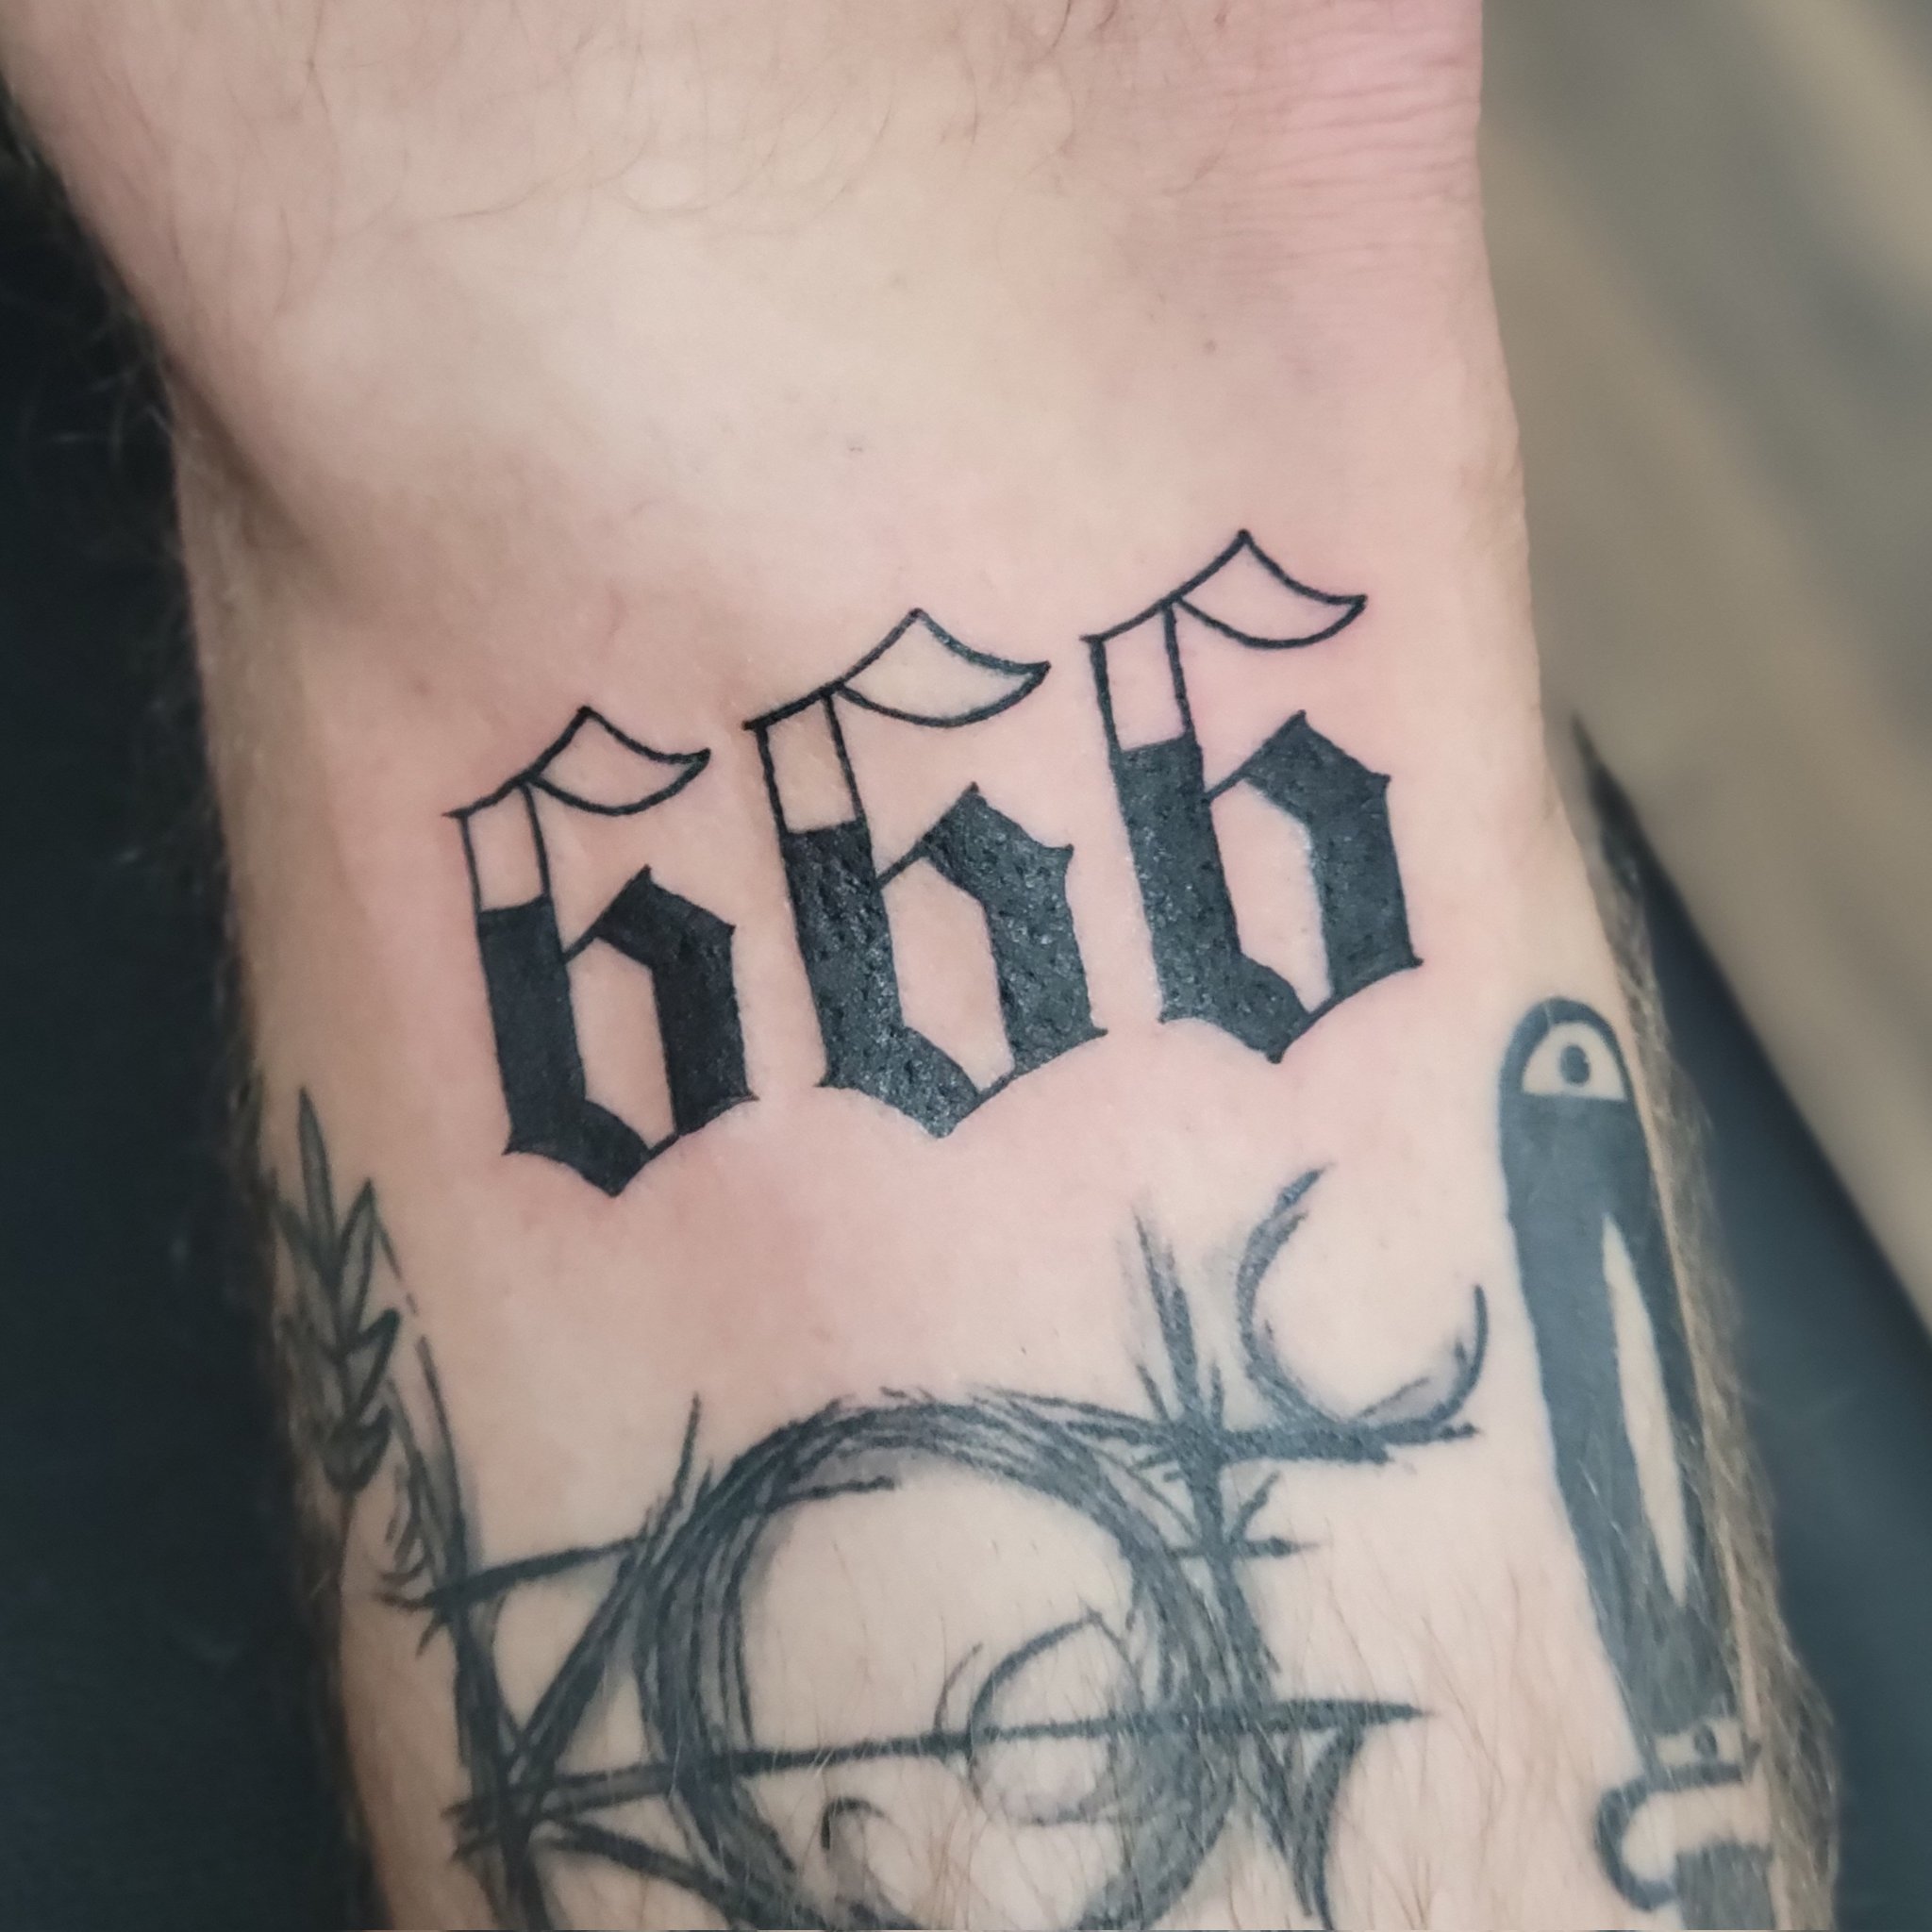 Tattoo 666: Những hình xăm 666 sắc sảo và độc đáo không chỉ là một bộ phận trong phong cách cách mạng, mà còn là sự thể hiện cá tính và tôn vinh sự độc lập. Với sự sáng tạo của các nghệ nhân điêu khắc và mực nhiệt, bạn sẽ có được một tác phẩm nghệ thuật độc đáo và tuyệt vời.